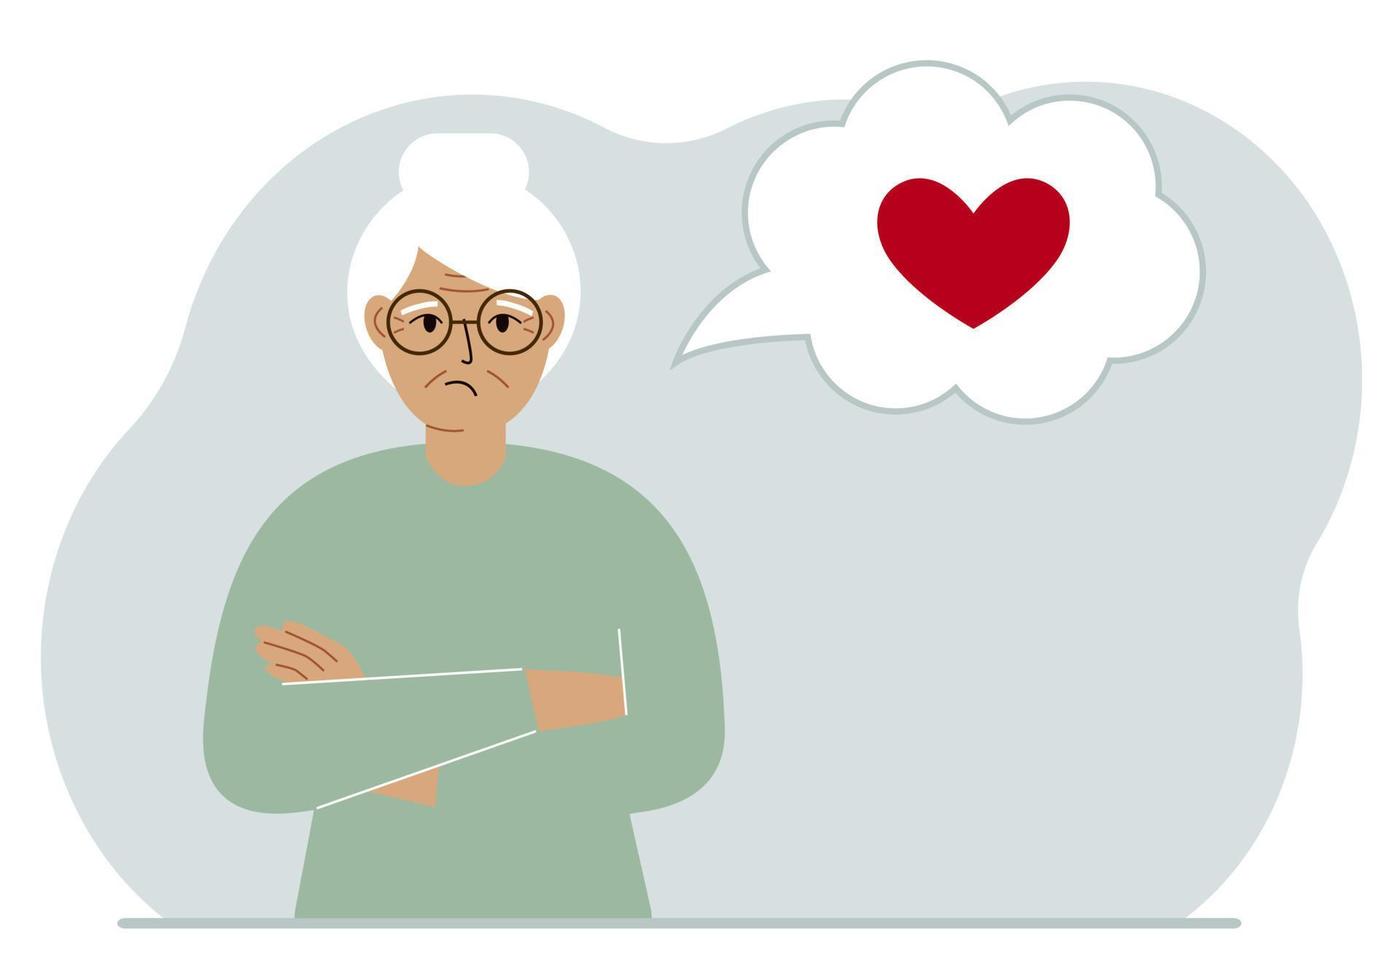 la abuela triste piensa en el amor. en el globo del pensamiento hay un corazón rojo. ilustración plana vectorial vector